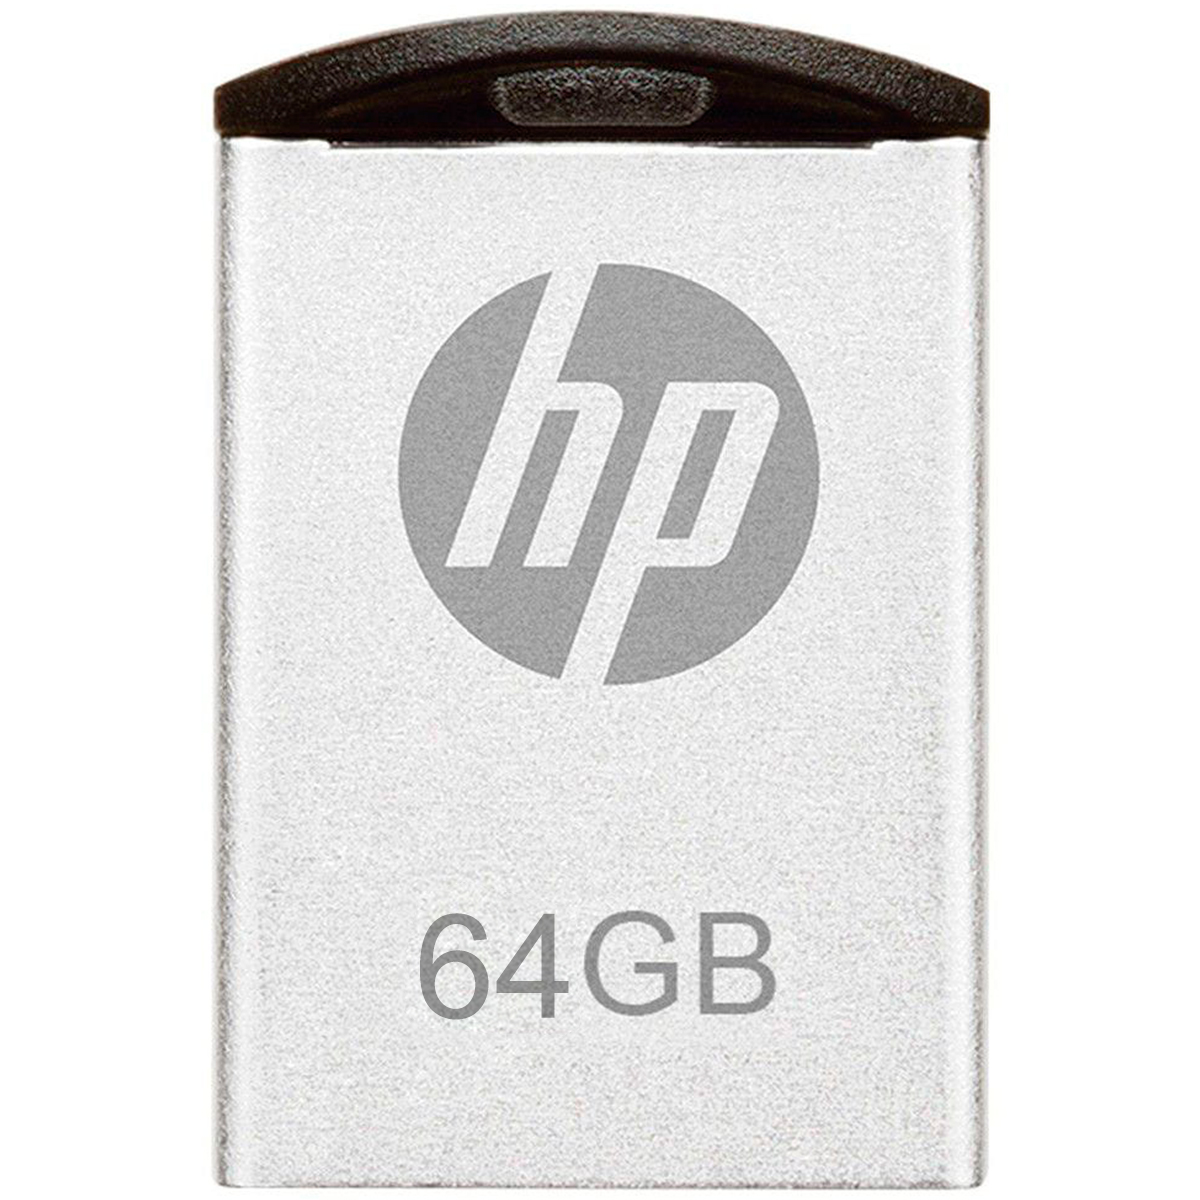 Pen Drive 64GB HP Mini V222W - USB - HPFD222W-64P [i]